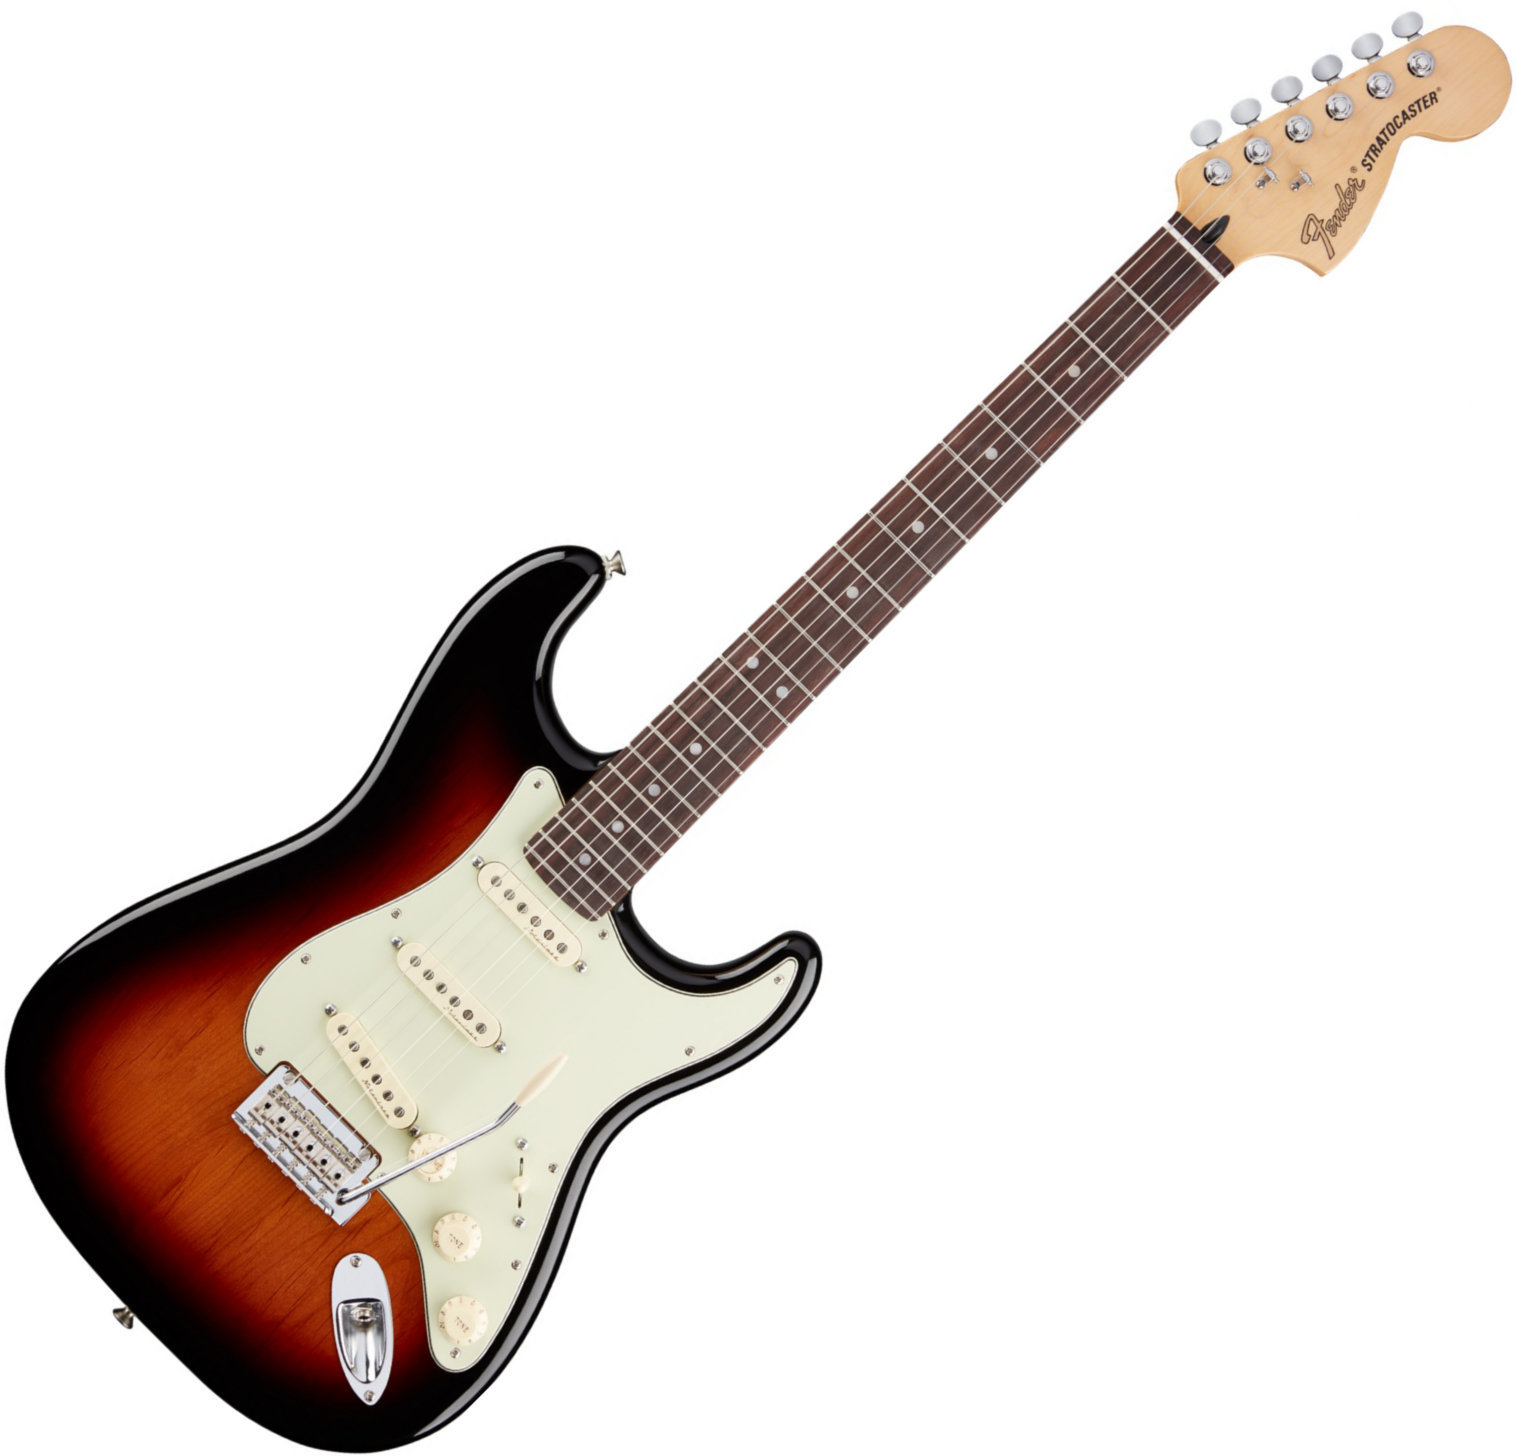 Elektriska gitarrer Fender Deluxe Roadhouse Stratocaster, RW, 3 Tone Sunburst